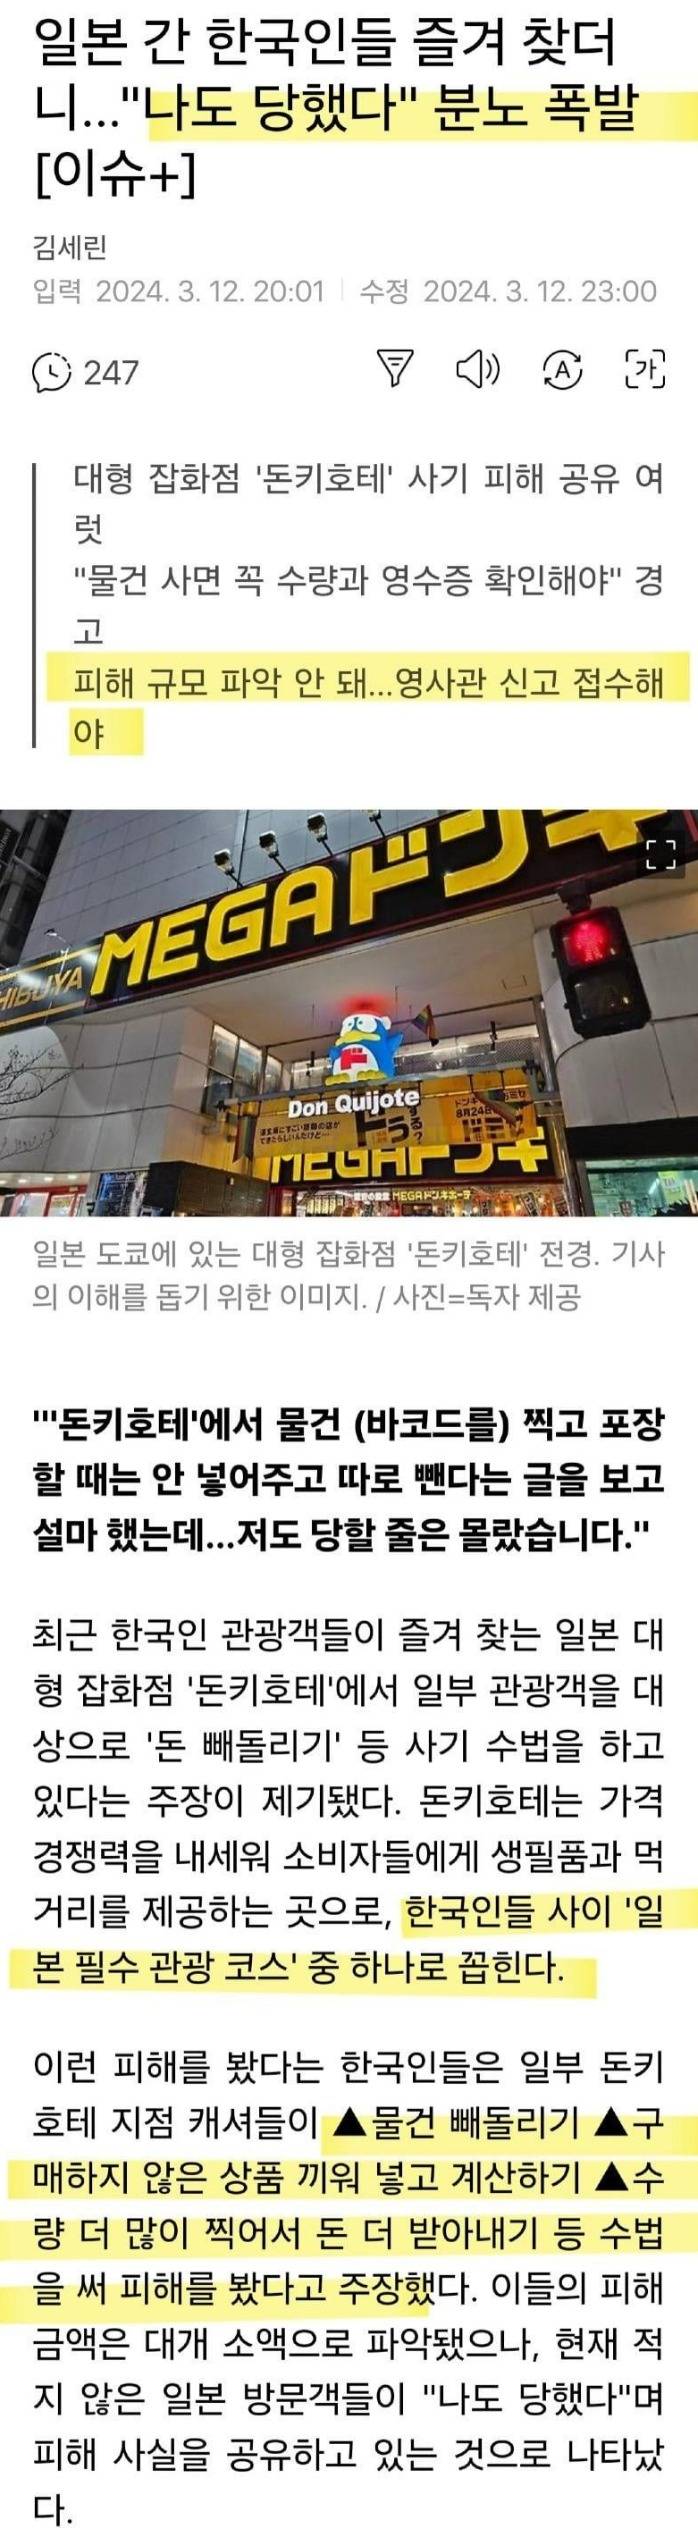 한국 관광객들이 많이 당한다는 사기